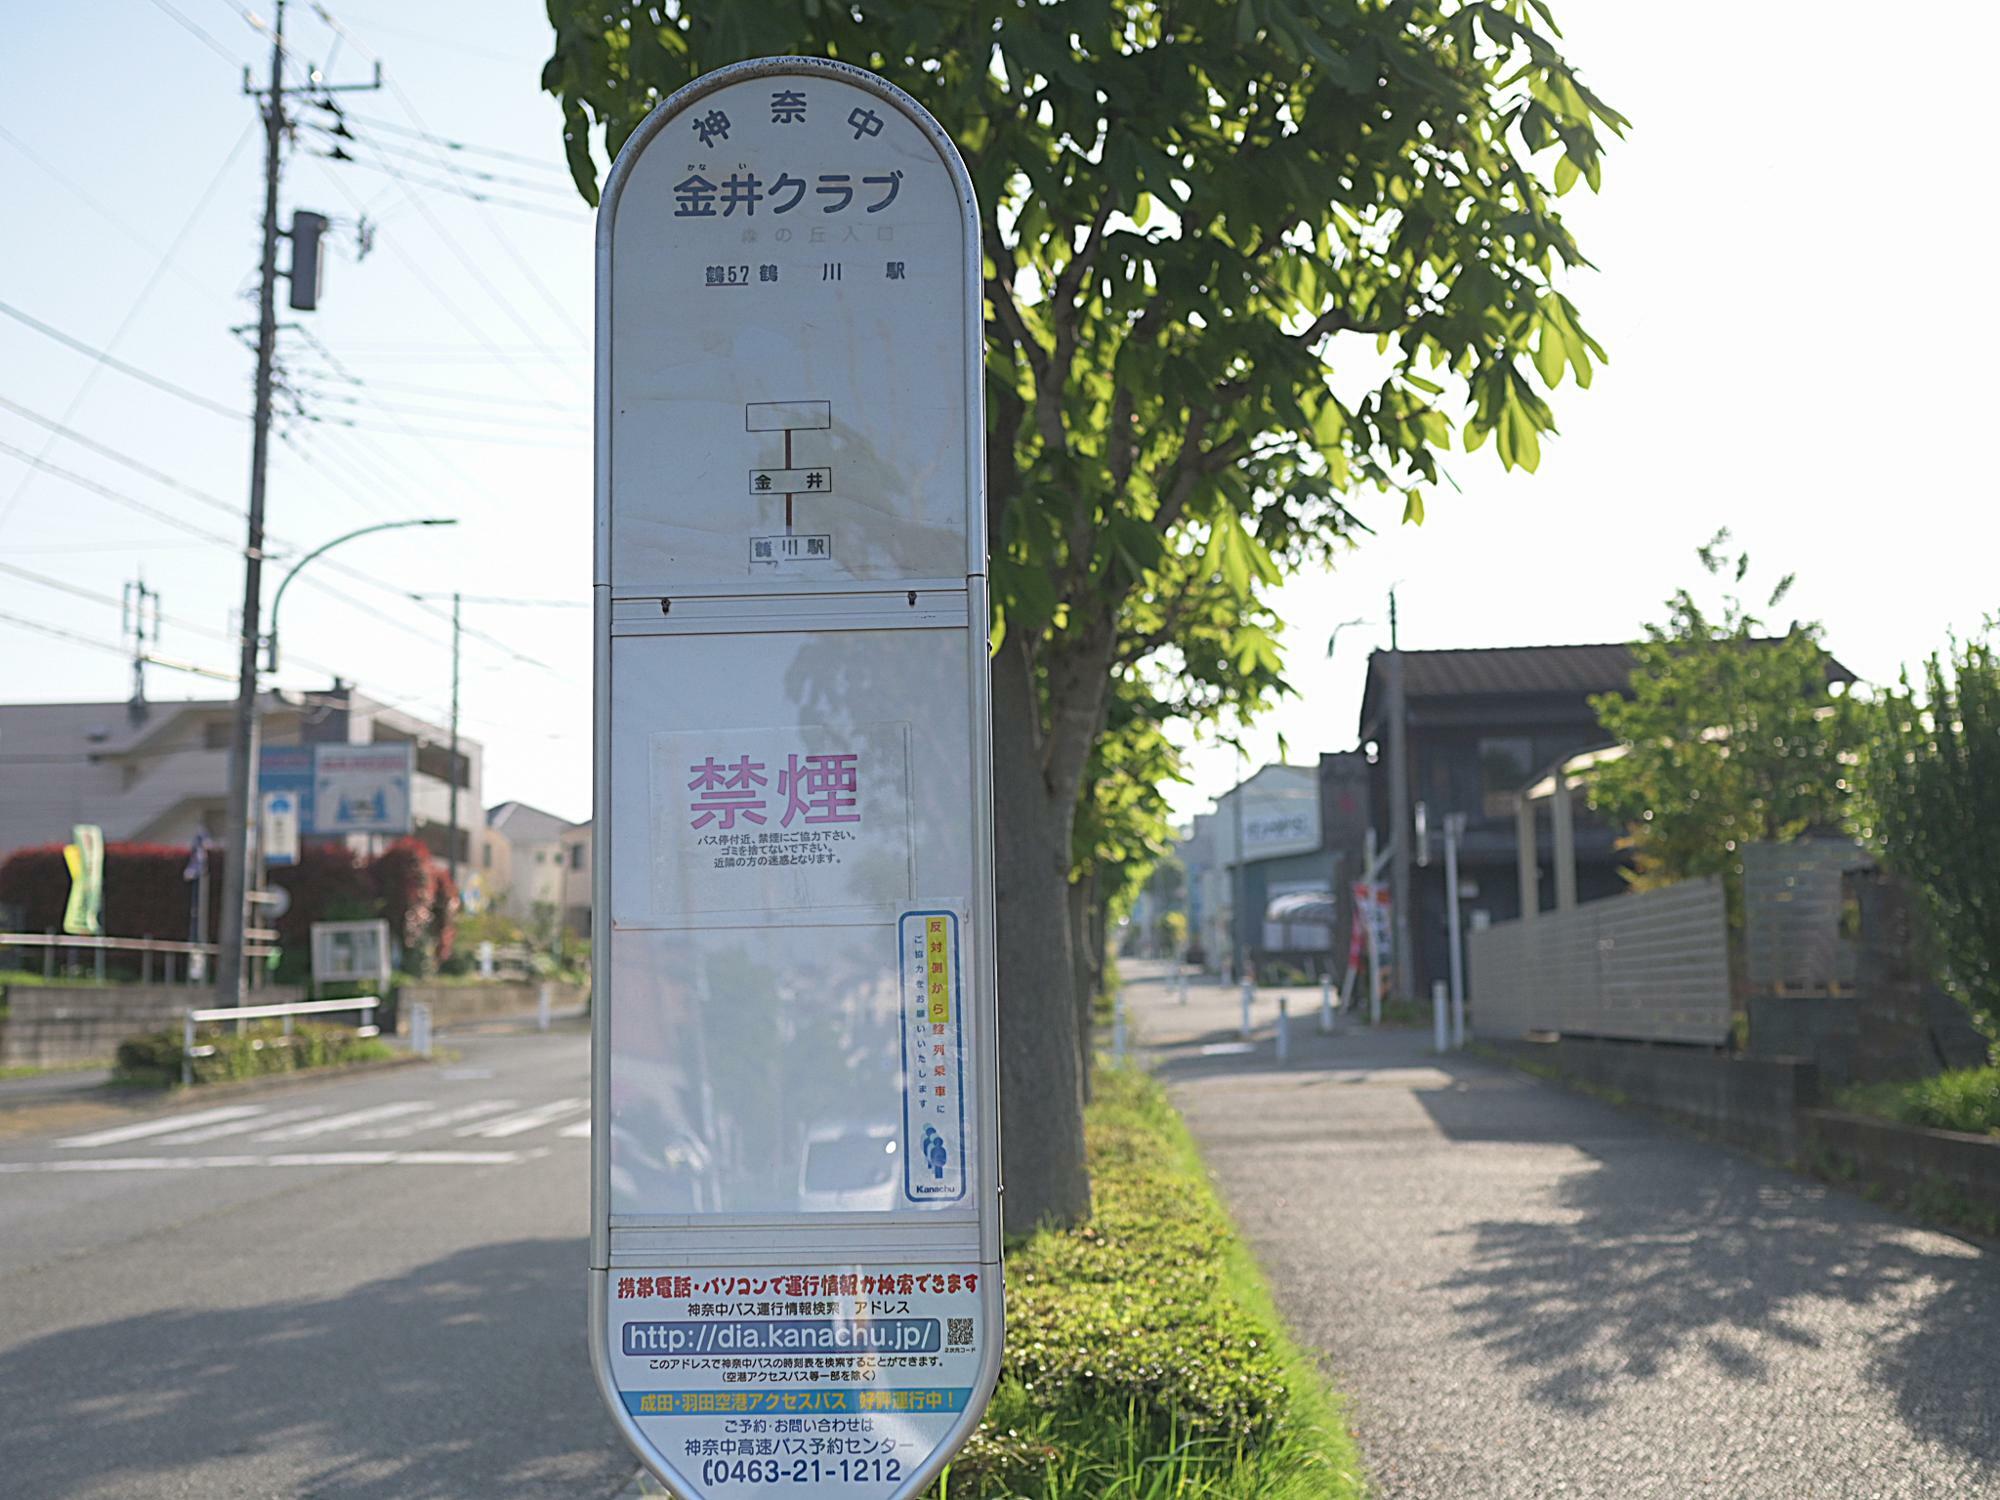 この停留所は鶴川駅行き / 到着する停留所は反対道路側にあります。